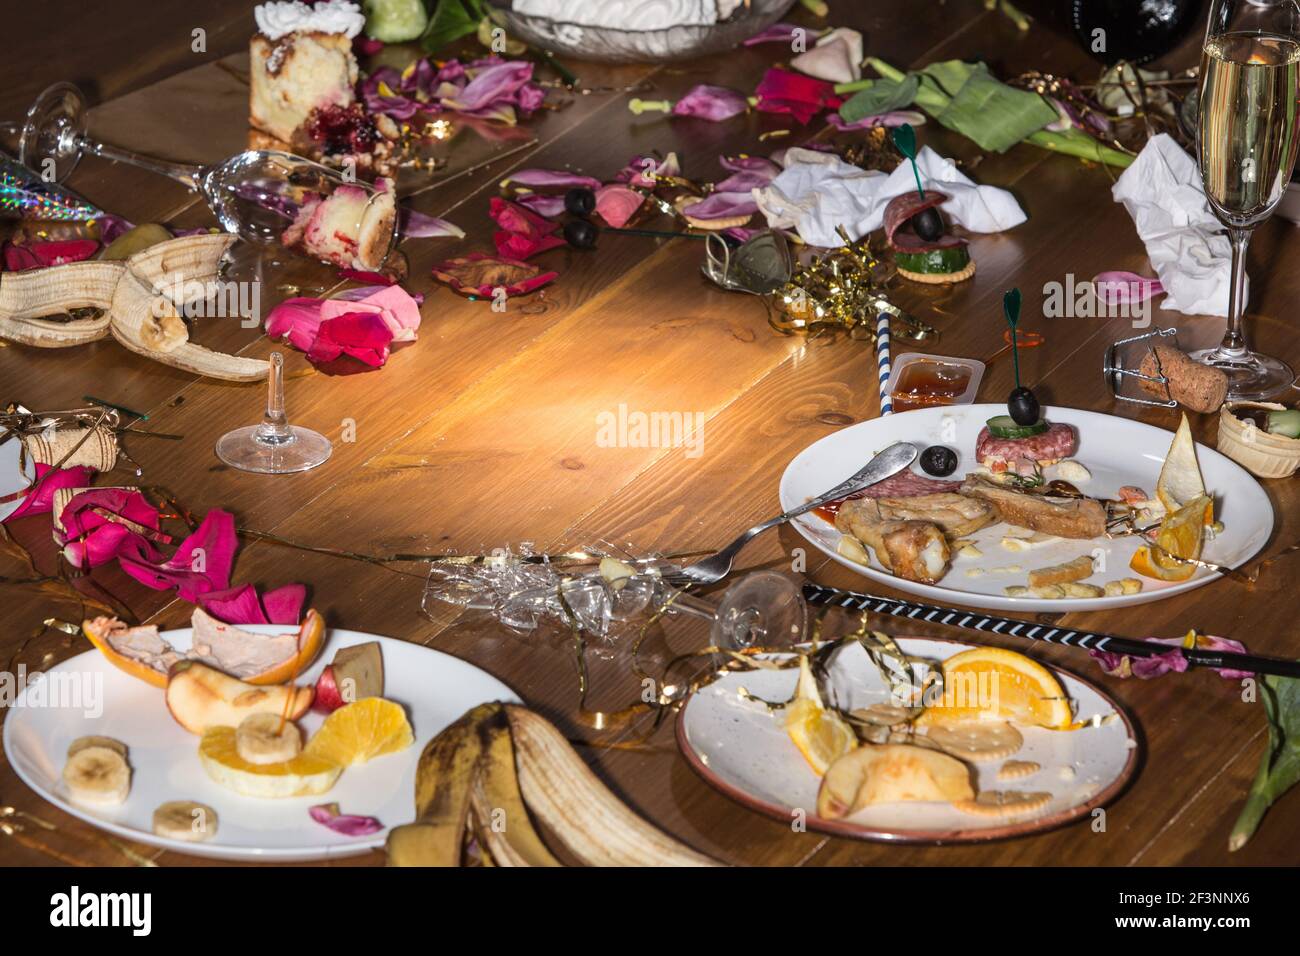 Am frühen Morgen nach der Party. Gläser und Teller auf dem Tisch mit Konfetti und Serpentin, Reste, Blütenblätter Stockfoto